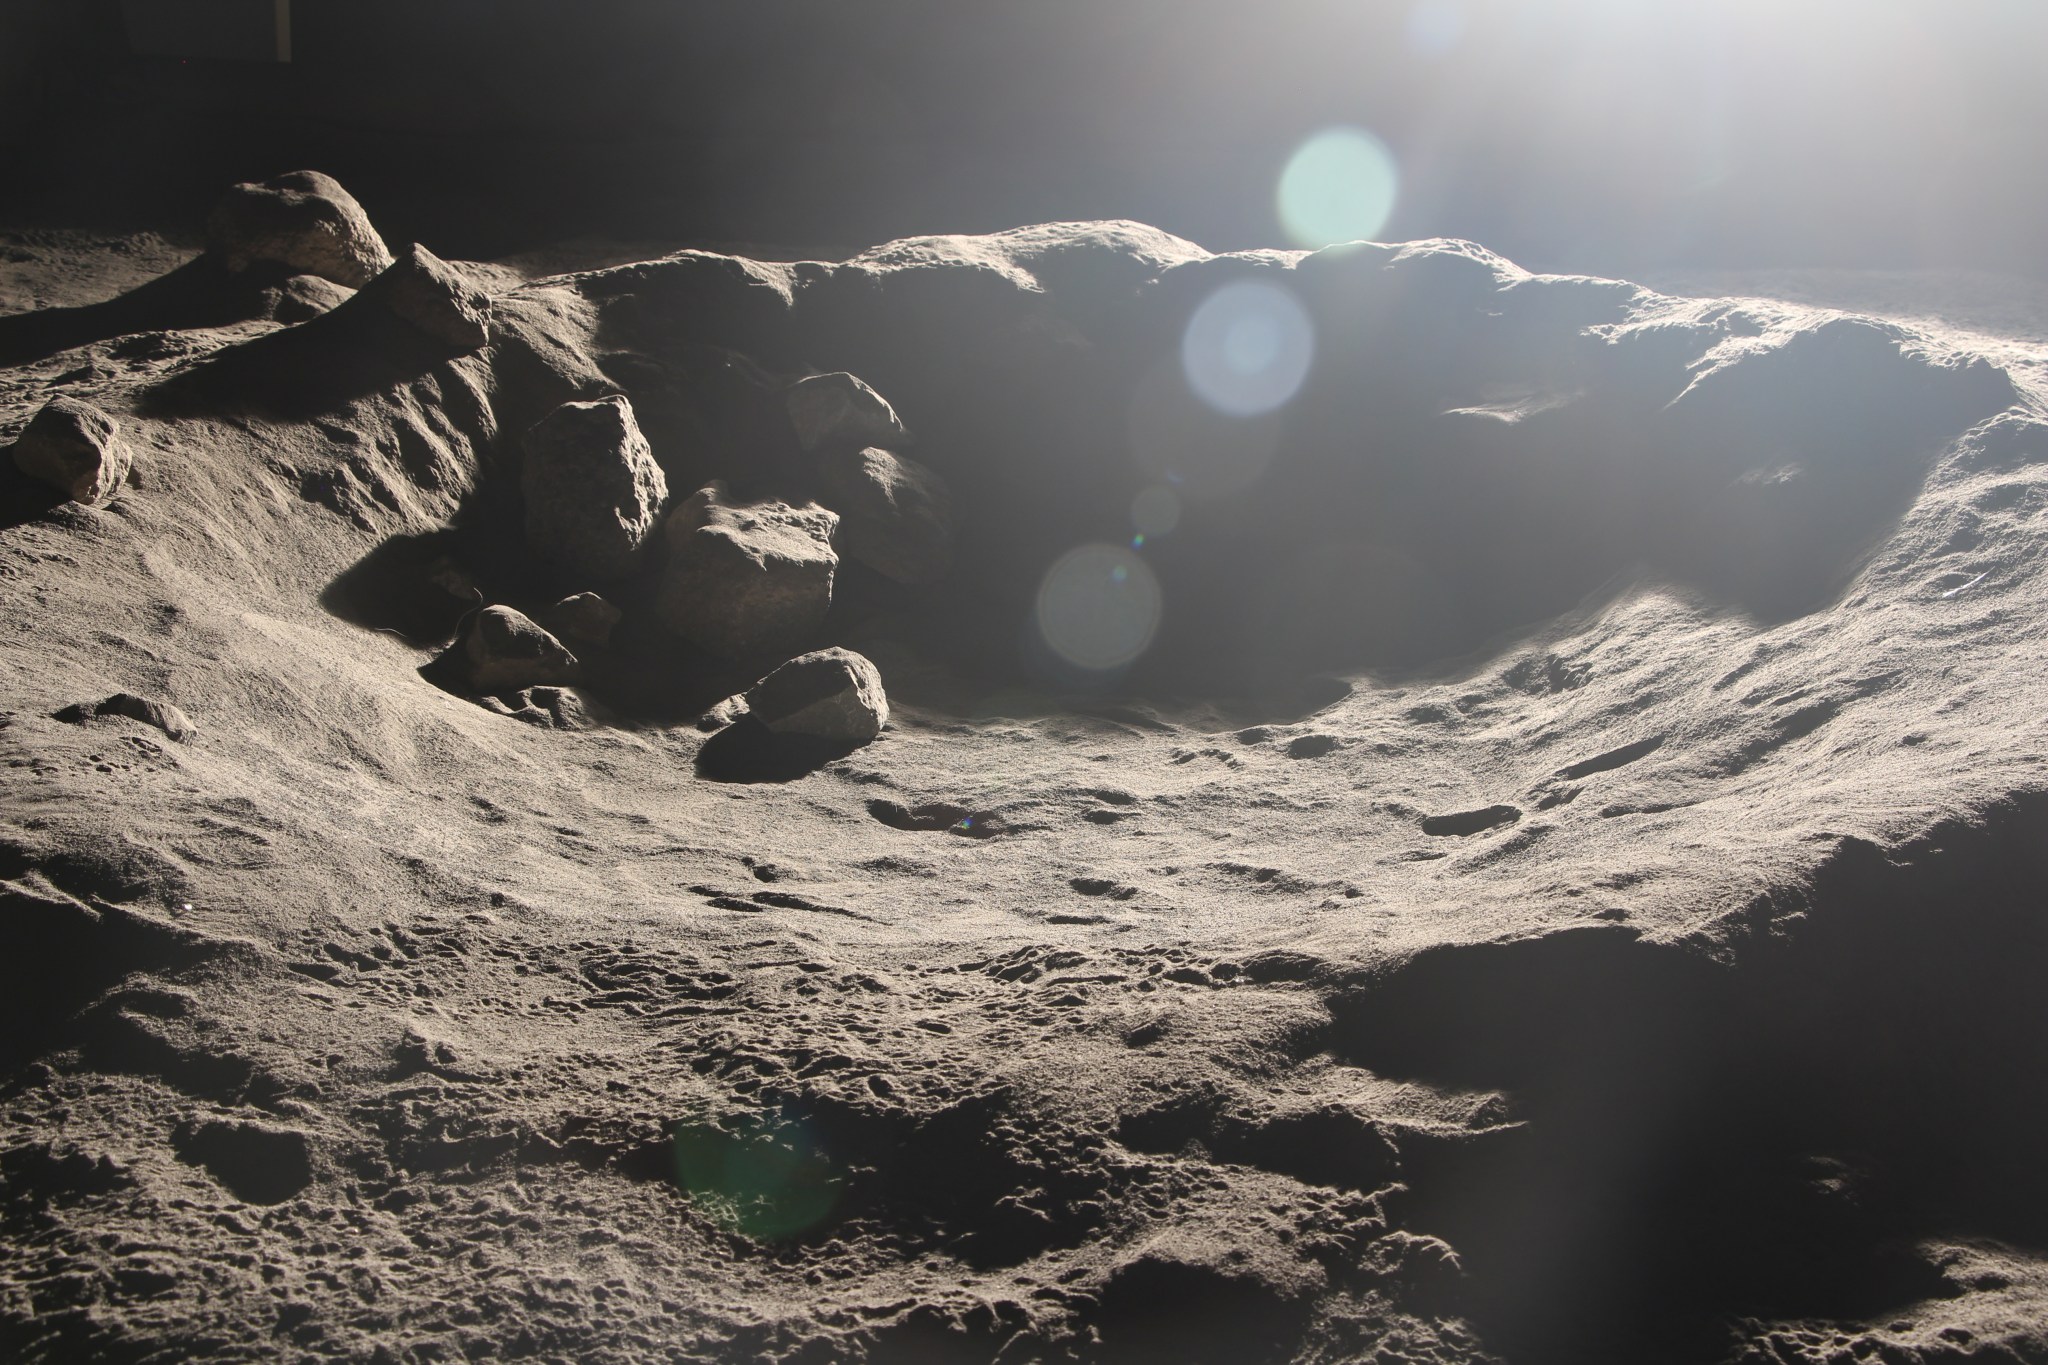 a simulated lunar environment